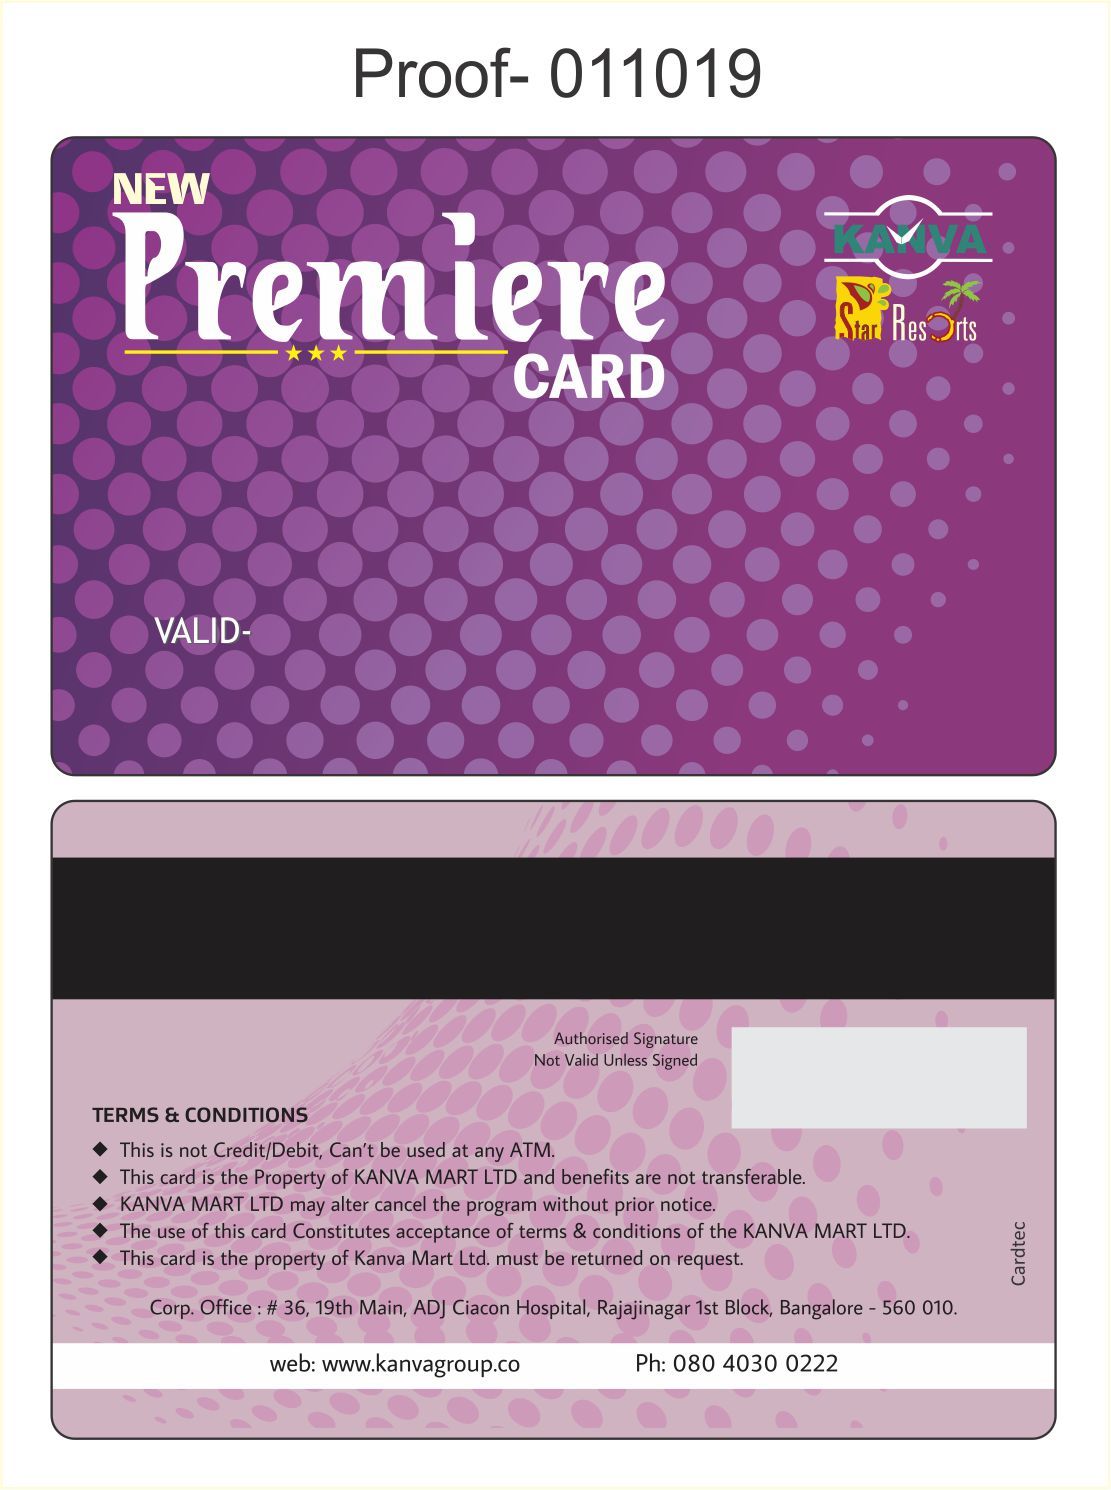 DIGITAL PRINTED ID CARDS